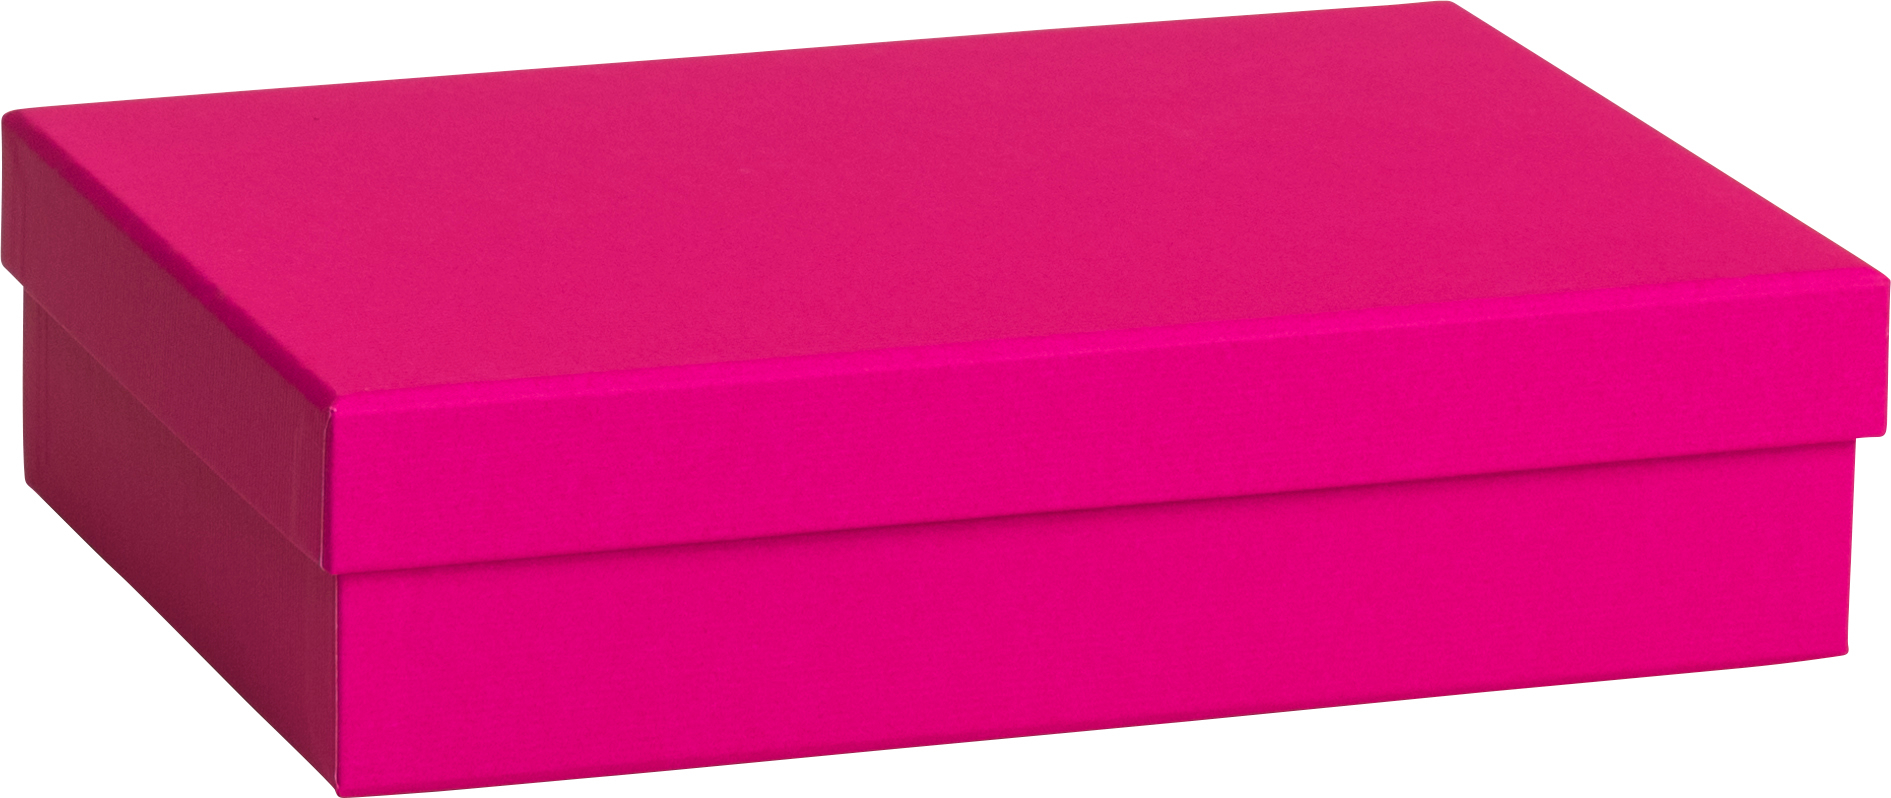 STEWO Boîte cadeau One Colour 2551783692 pink 16.5x24x6cm pink 16.5x24x6cm